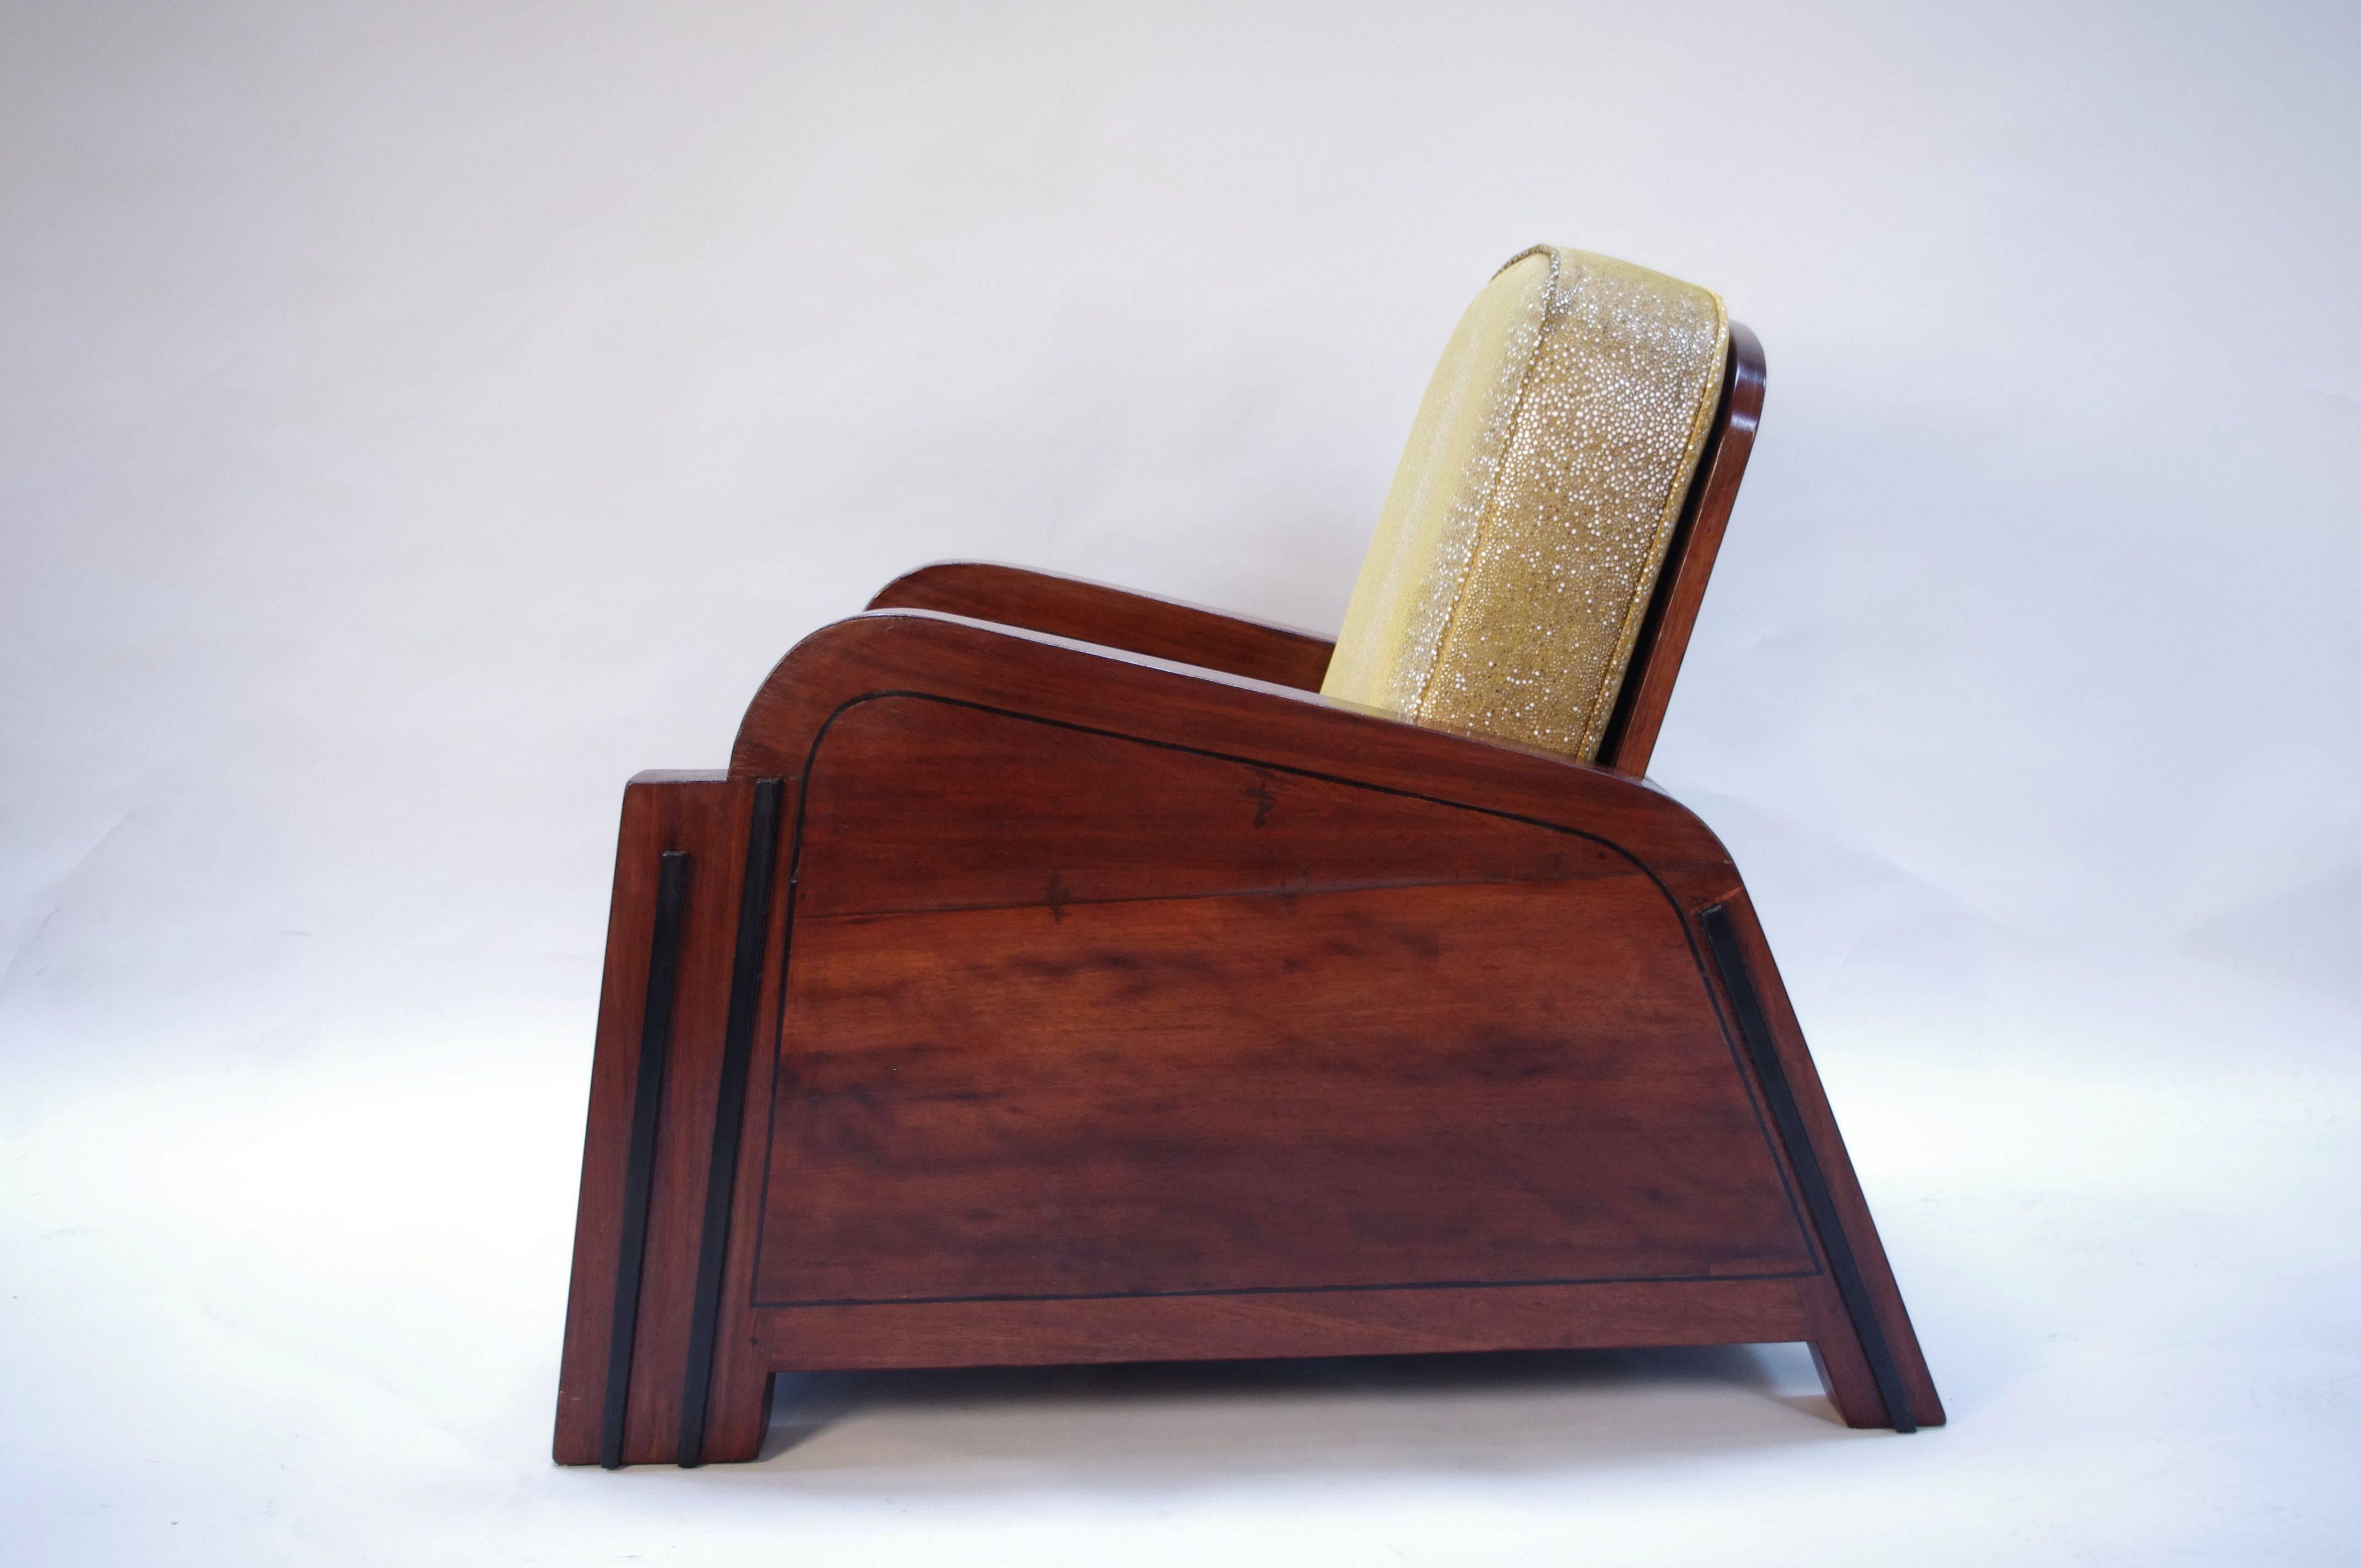 Paire de fauteuils art déco en bois exotique avec motifs en marqueterie de papillons à l'avant . Tissu en imitation Sharksin doré.
Œuvre de la période Art déco, 1920-30.